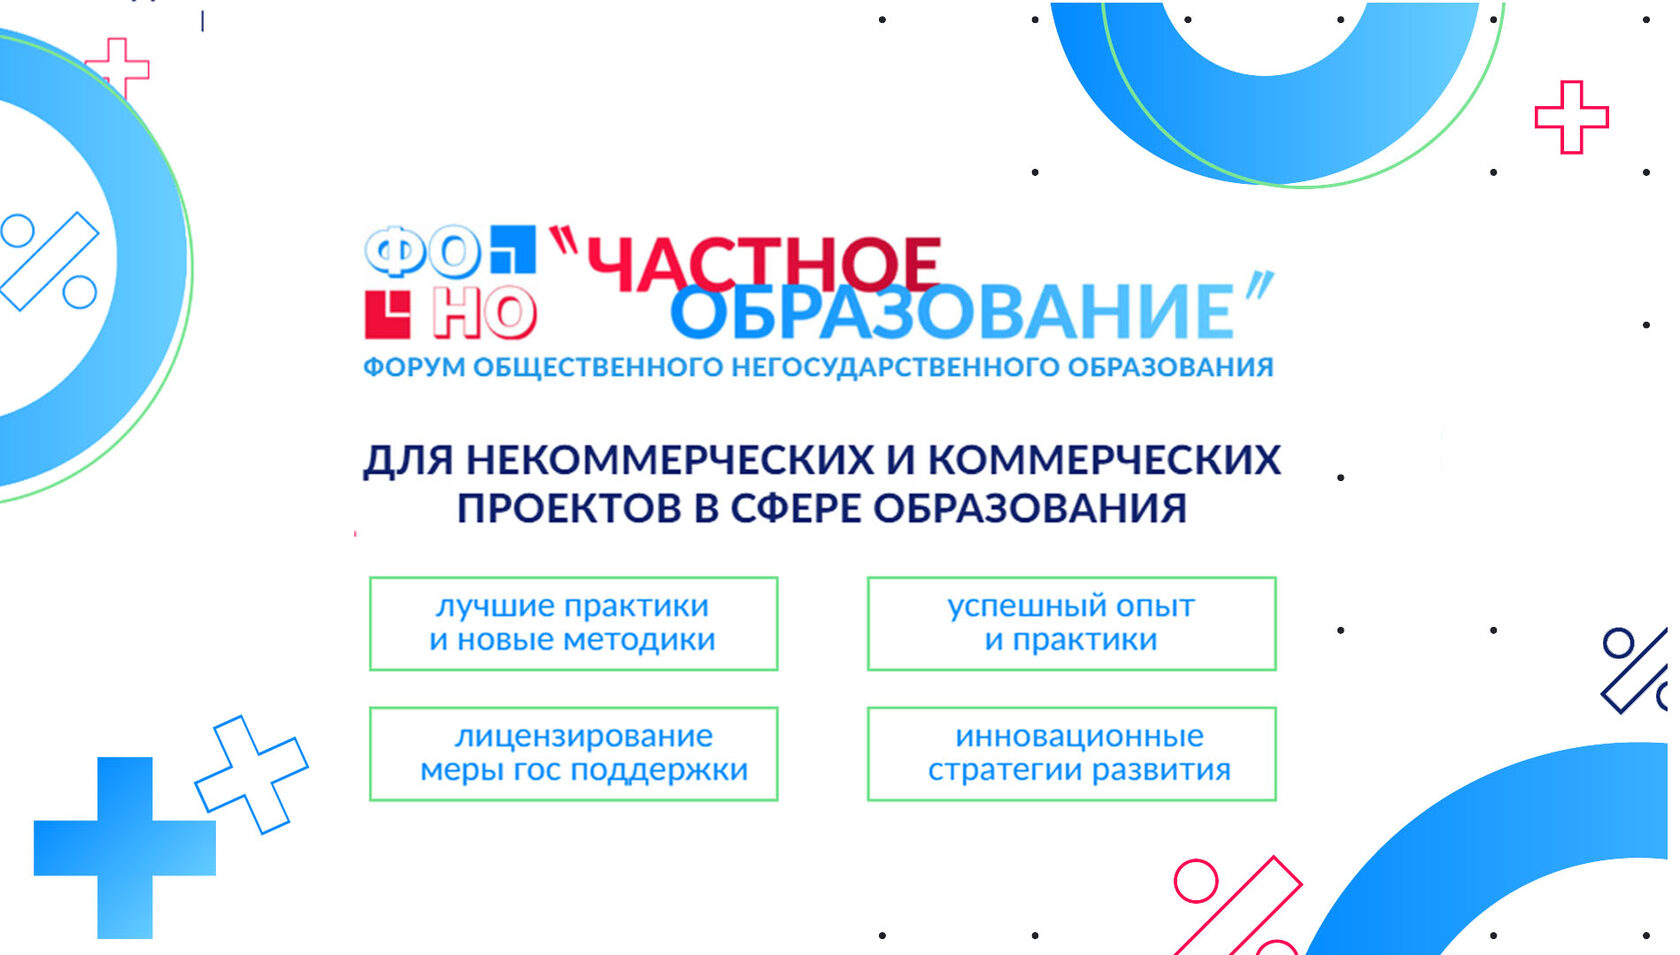 XIX-й Форум частных медицинских организаций регионов России 12 и 13 октября года в Иваново